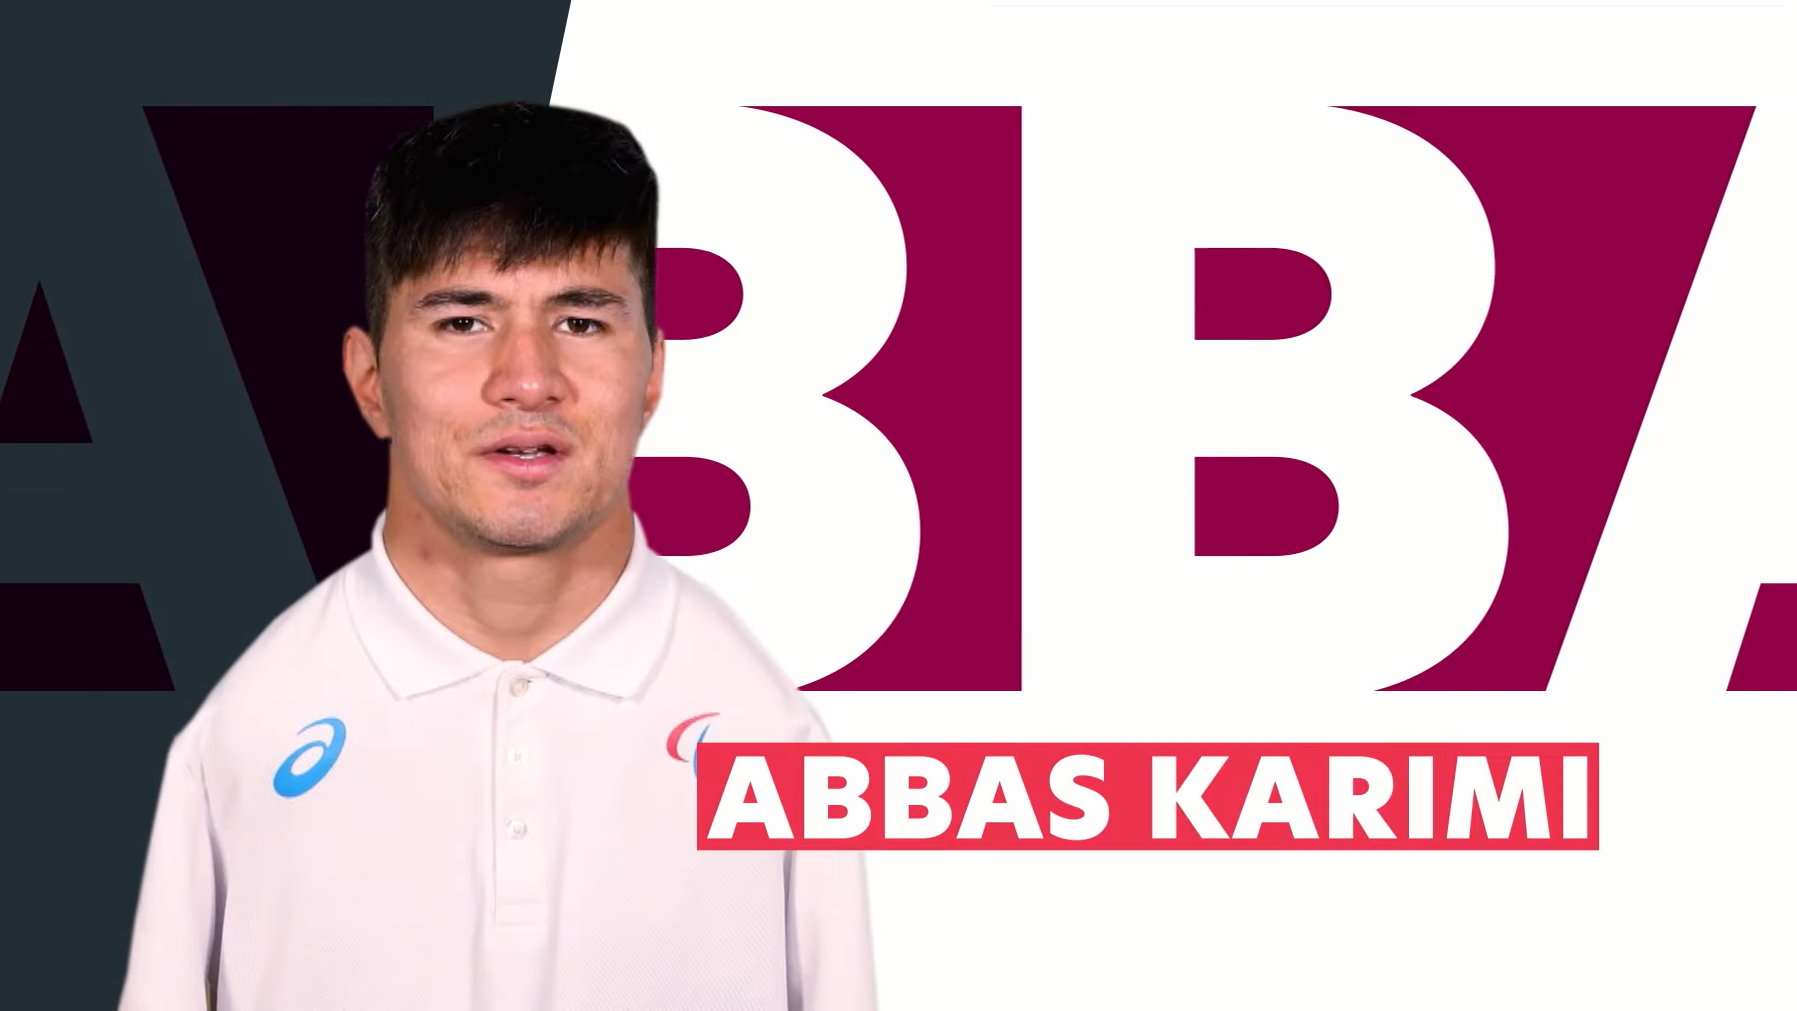 Abbas Karimi es un nadador afgano que huyó de su país a los 16 años y hoy forma parte del Equipo de Refugiados que competirá en los Juegos Paralímpicos de Tokio.